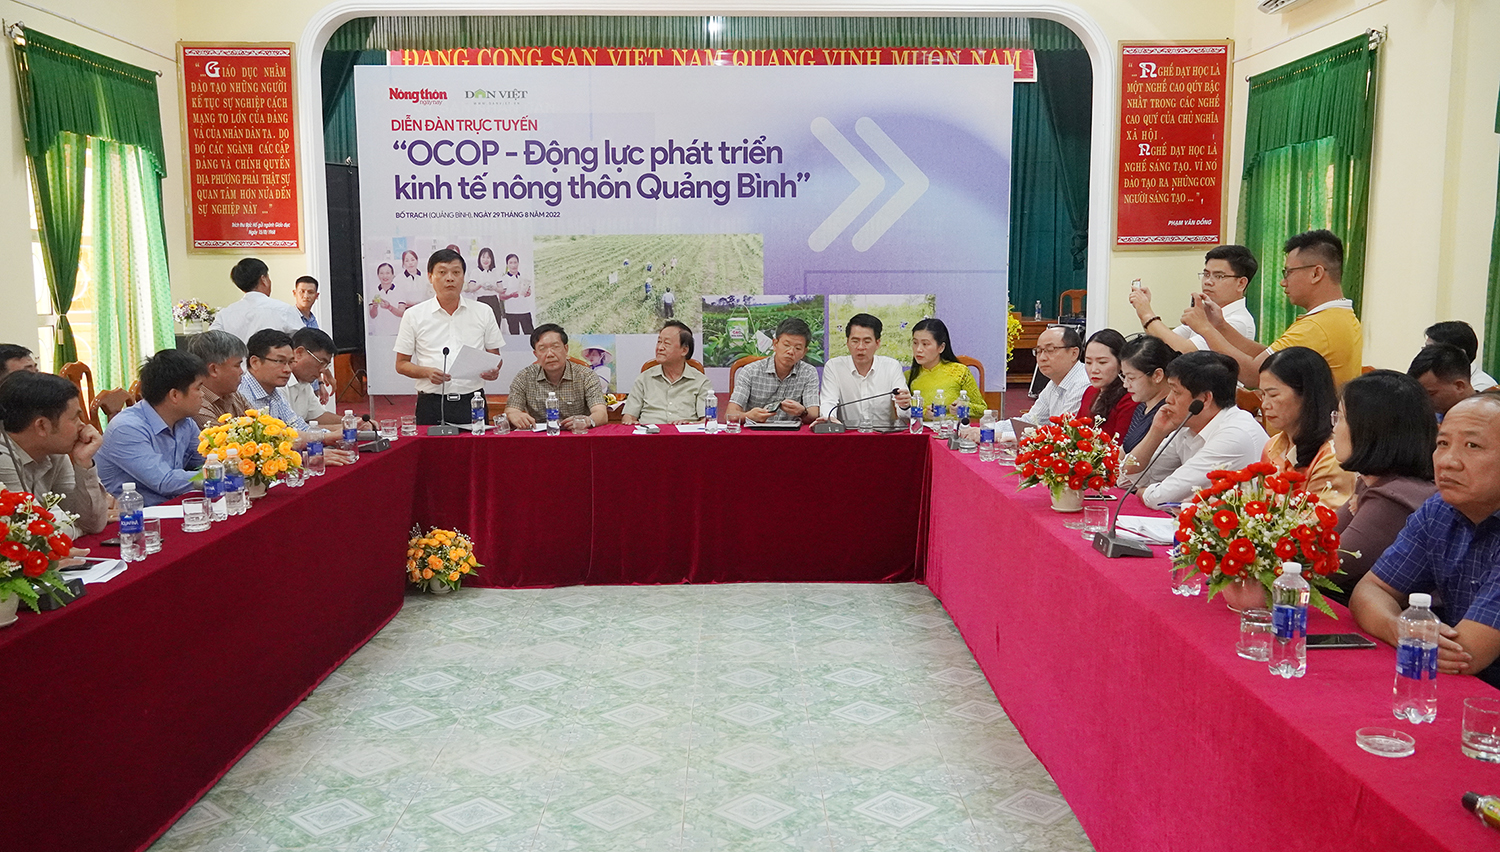 Diễn đàn trực tuyến "OCOP-Động lực phát triển kinh tế nông thôn Quảng Bình"